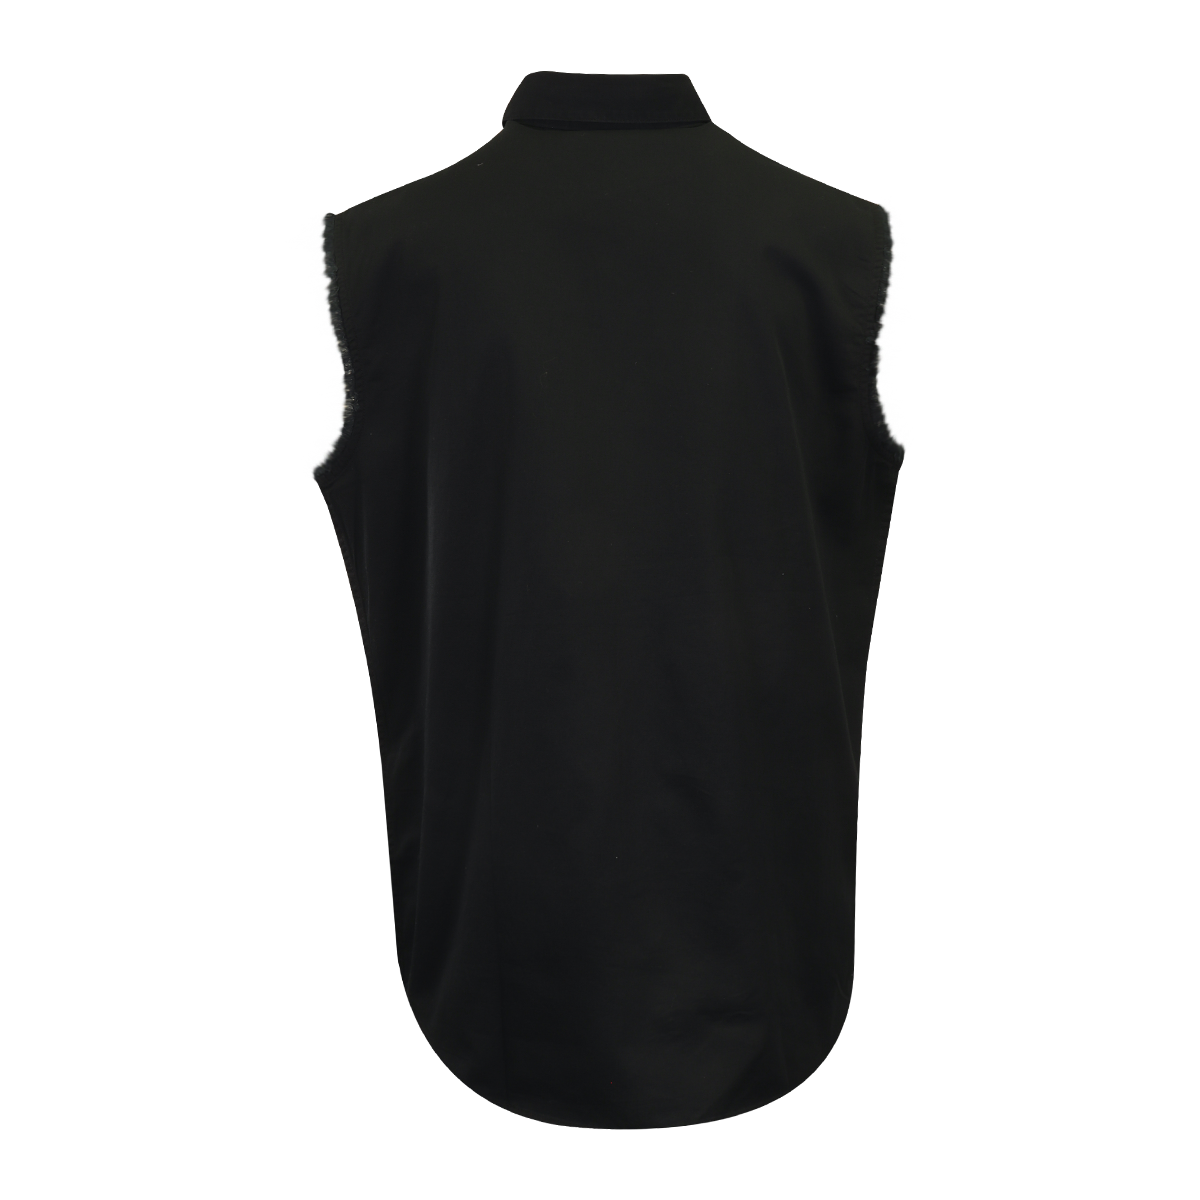 Harley-Davidson Men's Vest Black Teal Logo Sleeveless Shirt (S62)